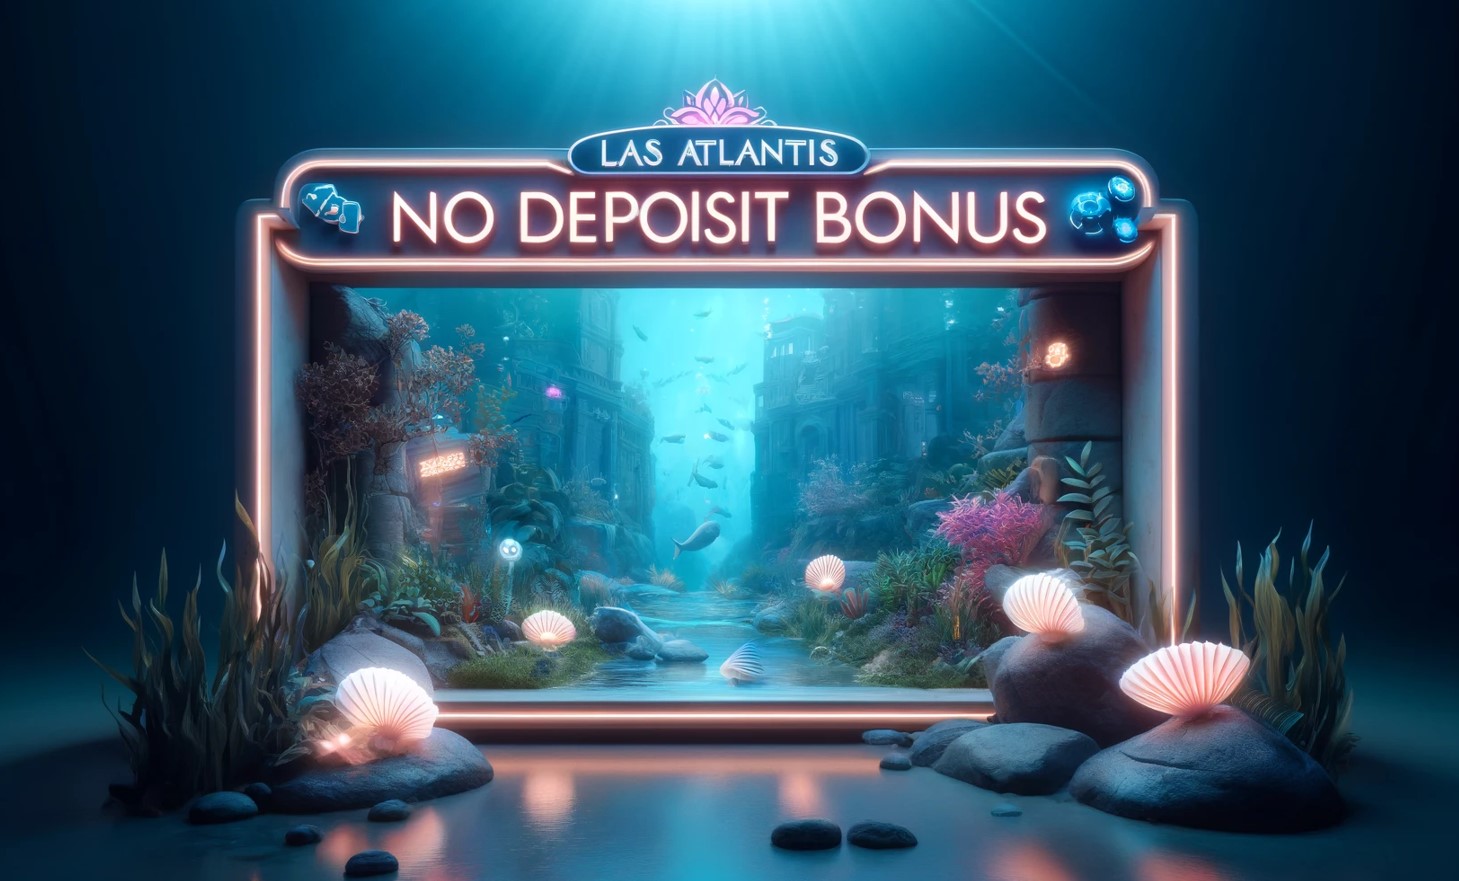 Las Atlantis Casino No Deposit Bonus 2